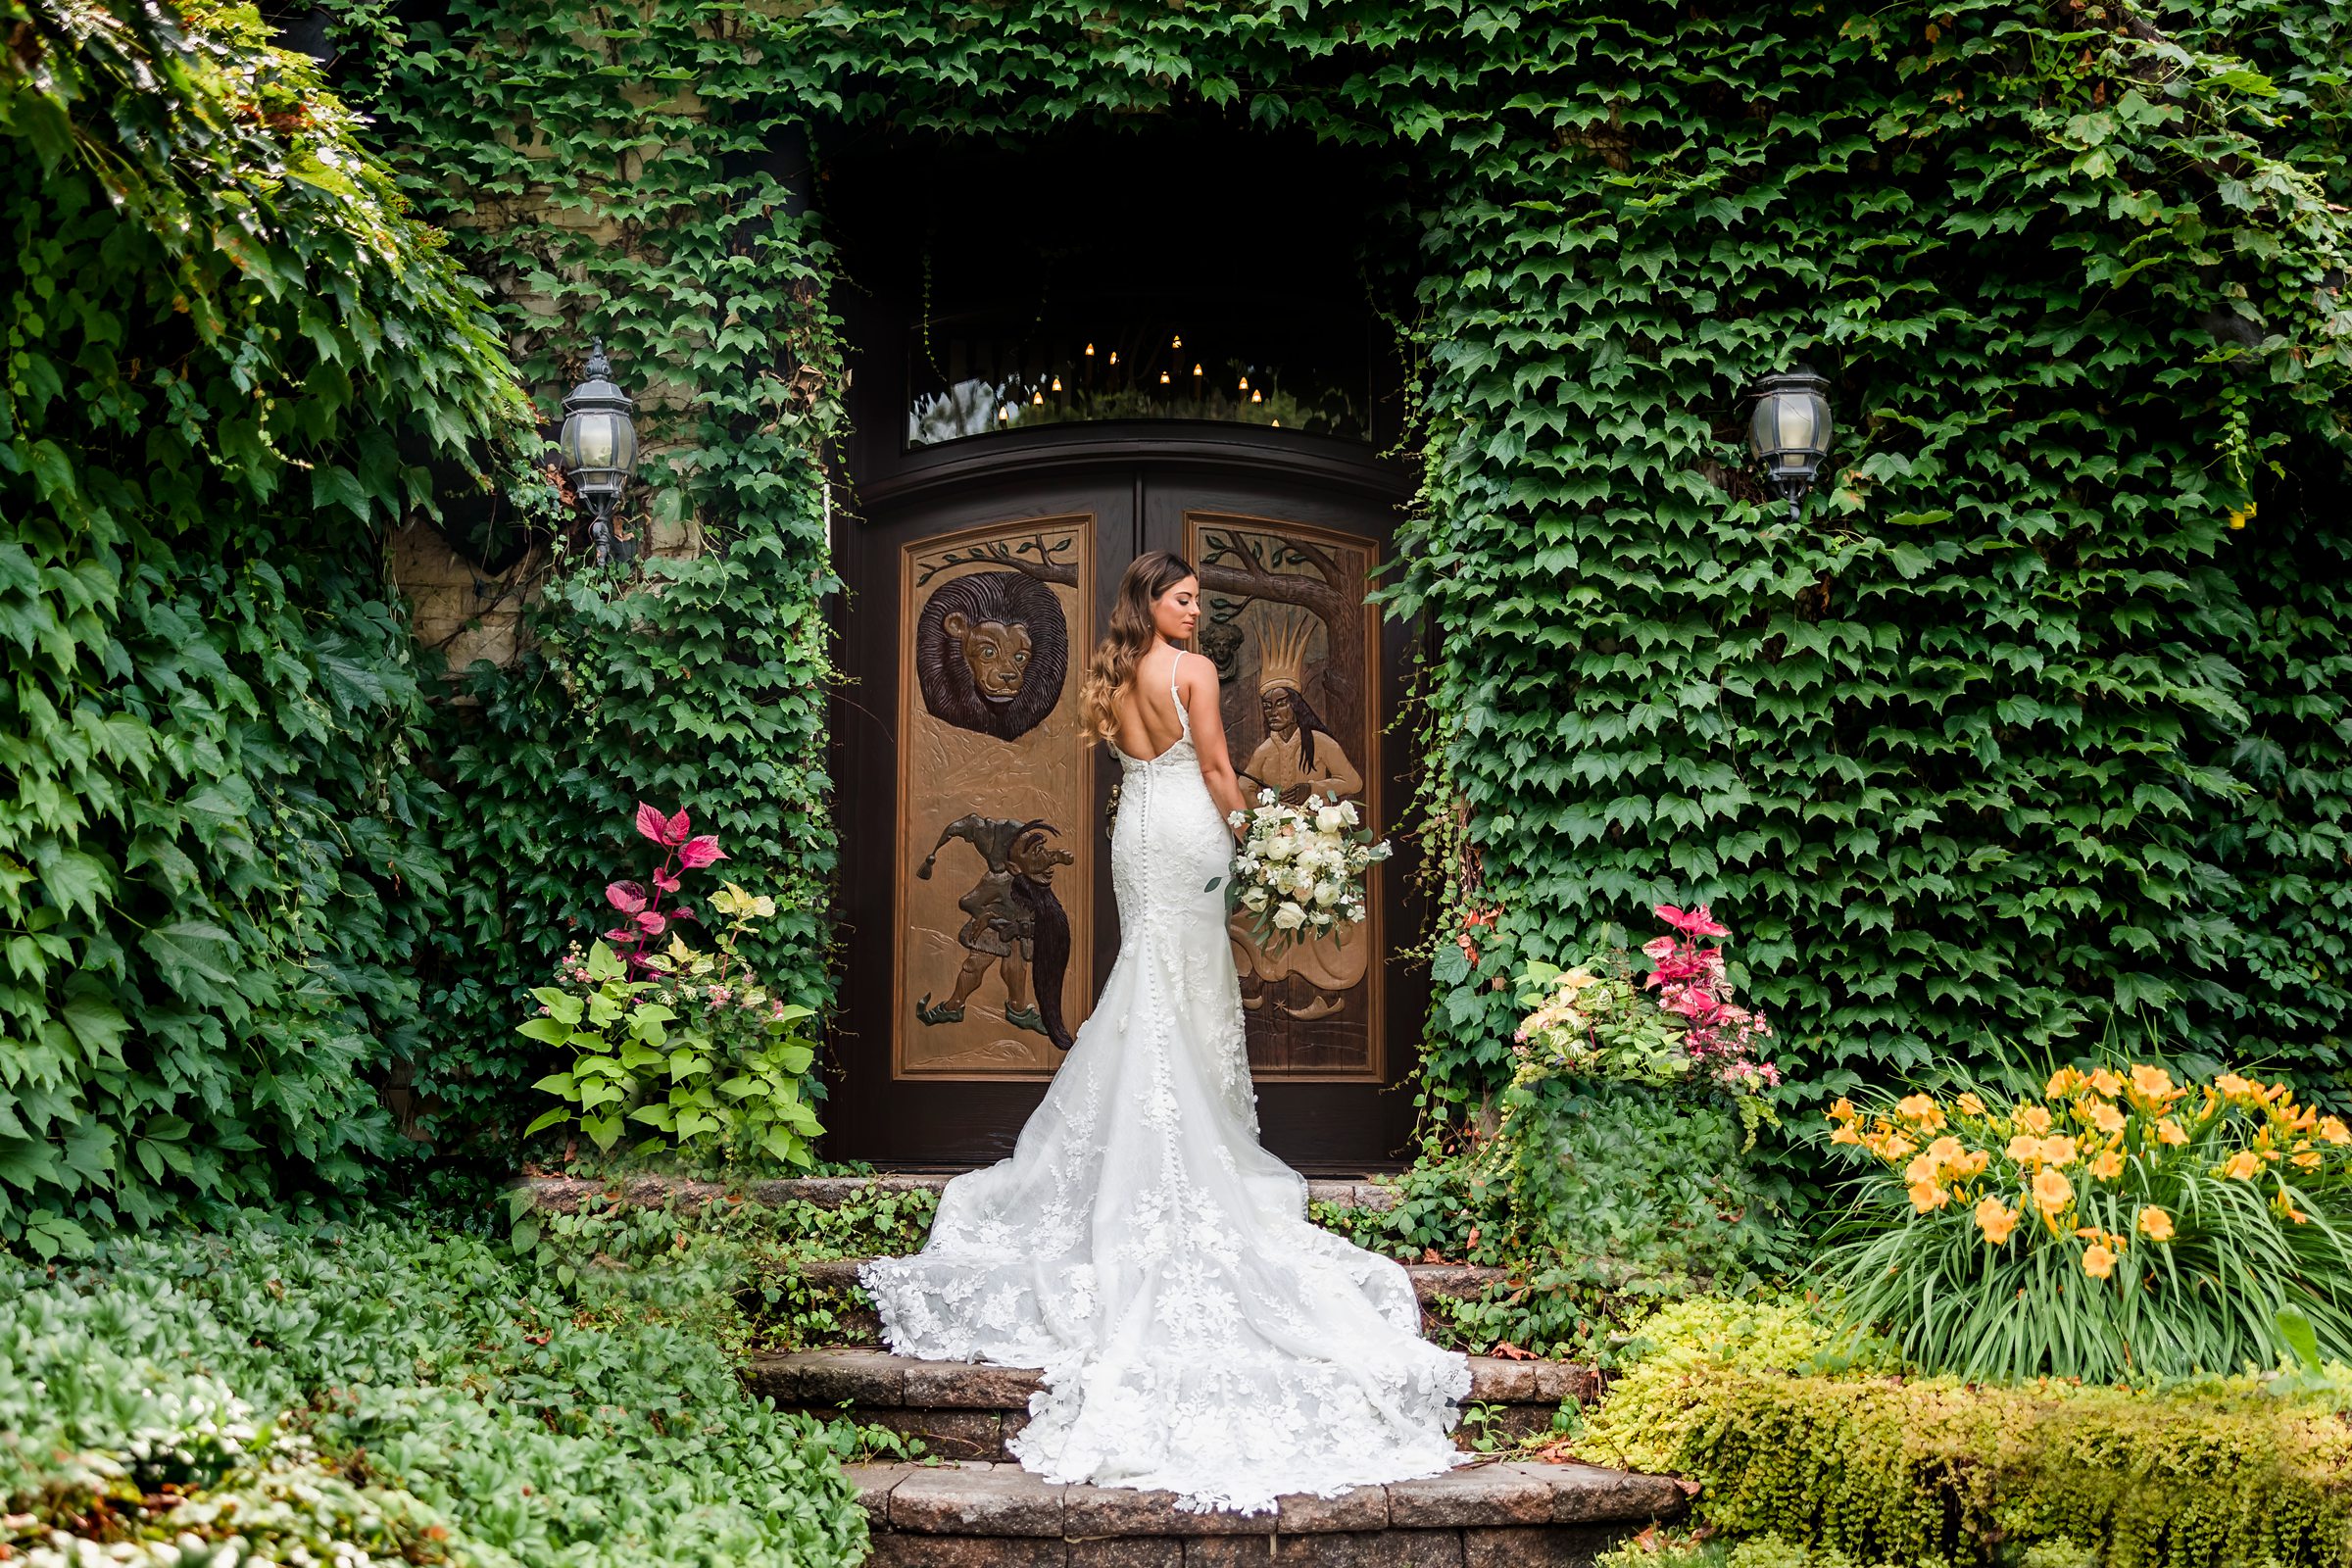 Bridal Portrait at the Monte Bello Estate in Lemont, Illinois.